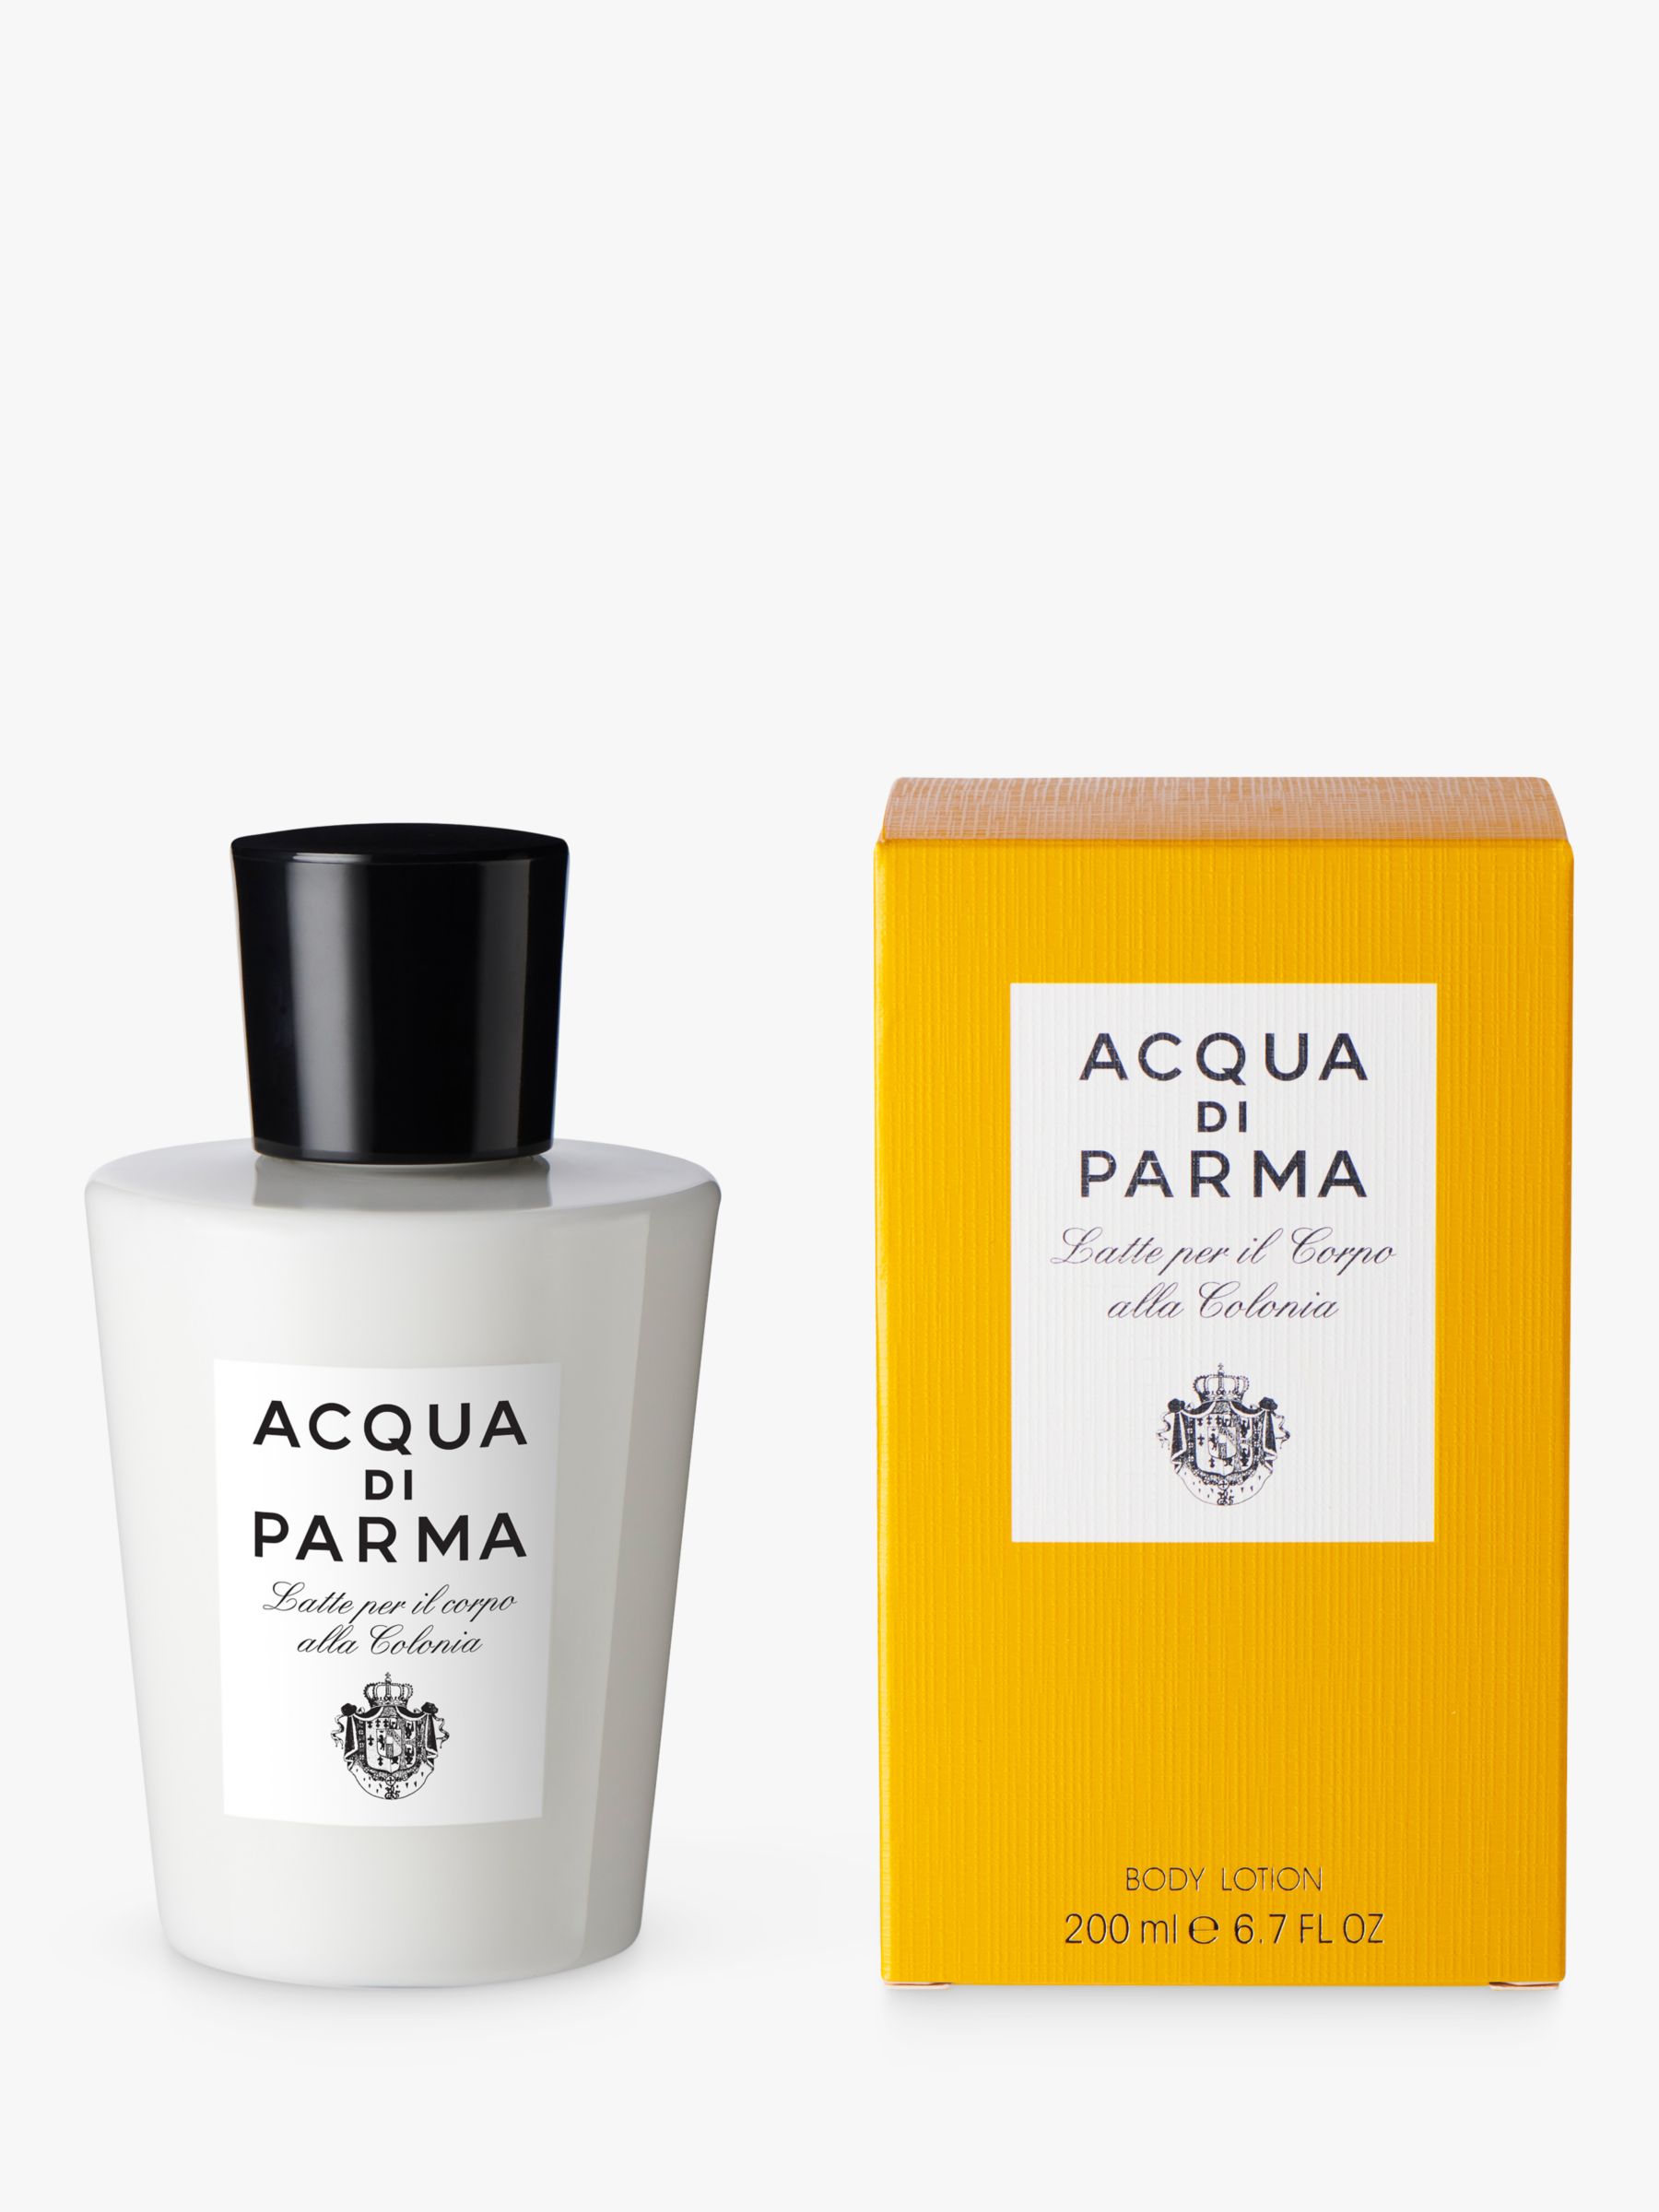 Acqua di Parma - Colonia Body Cream 5 oz.